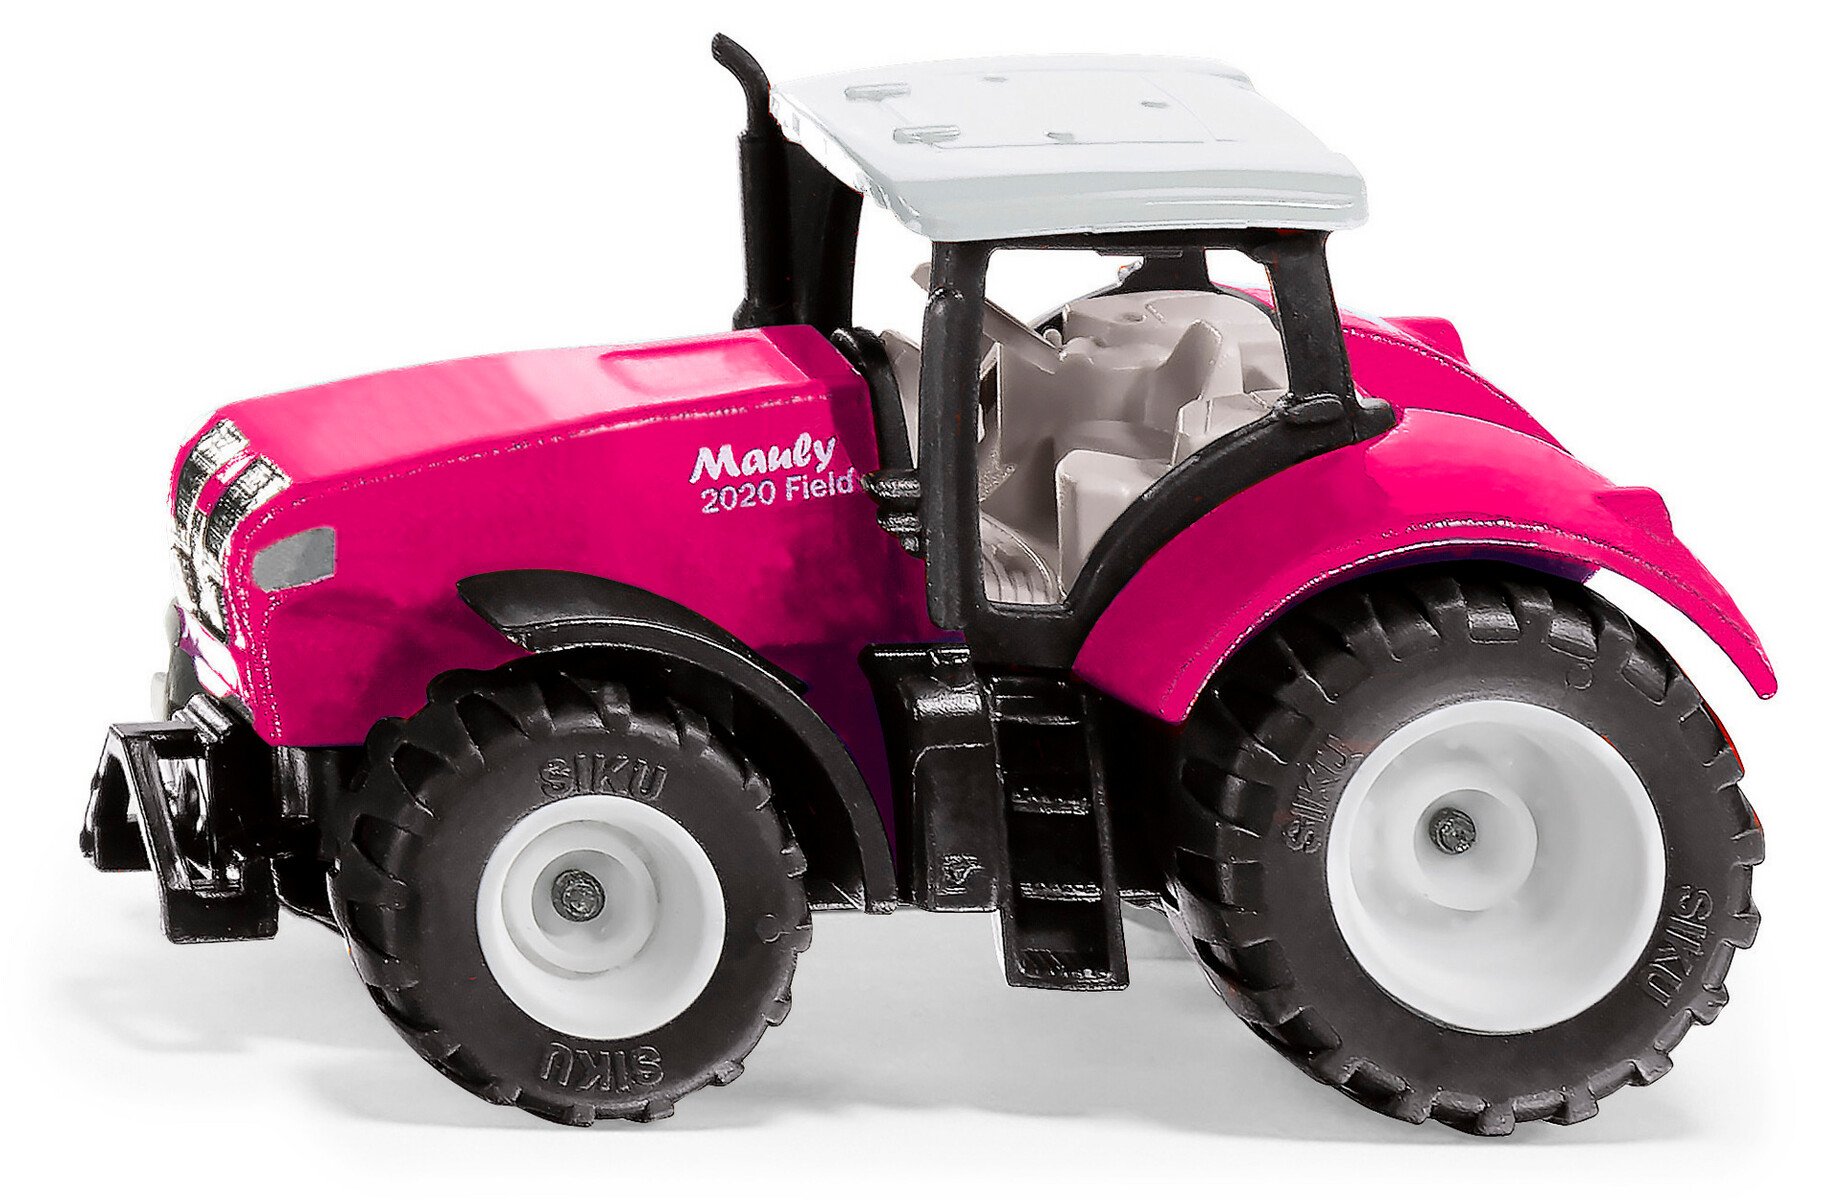 Mauly X540 pink